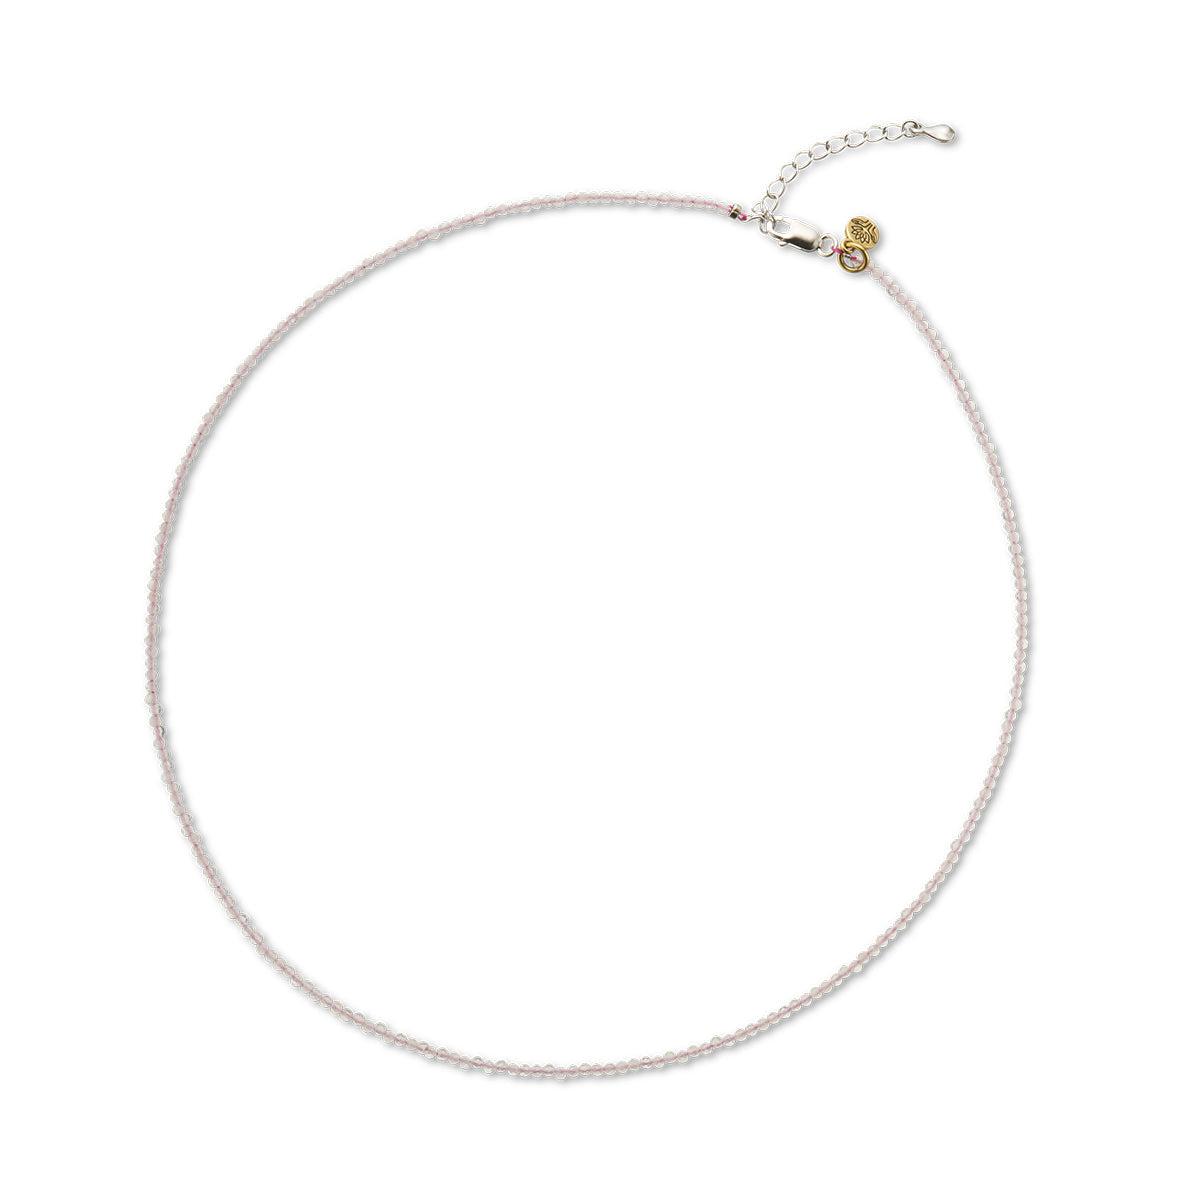 Rose Quartz Empower Gem Necklace-Jewellery-Palas-The Bay Room